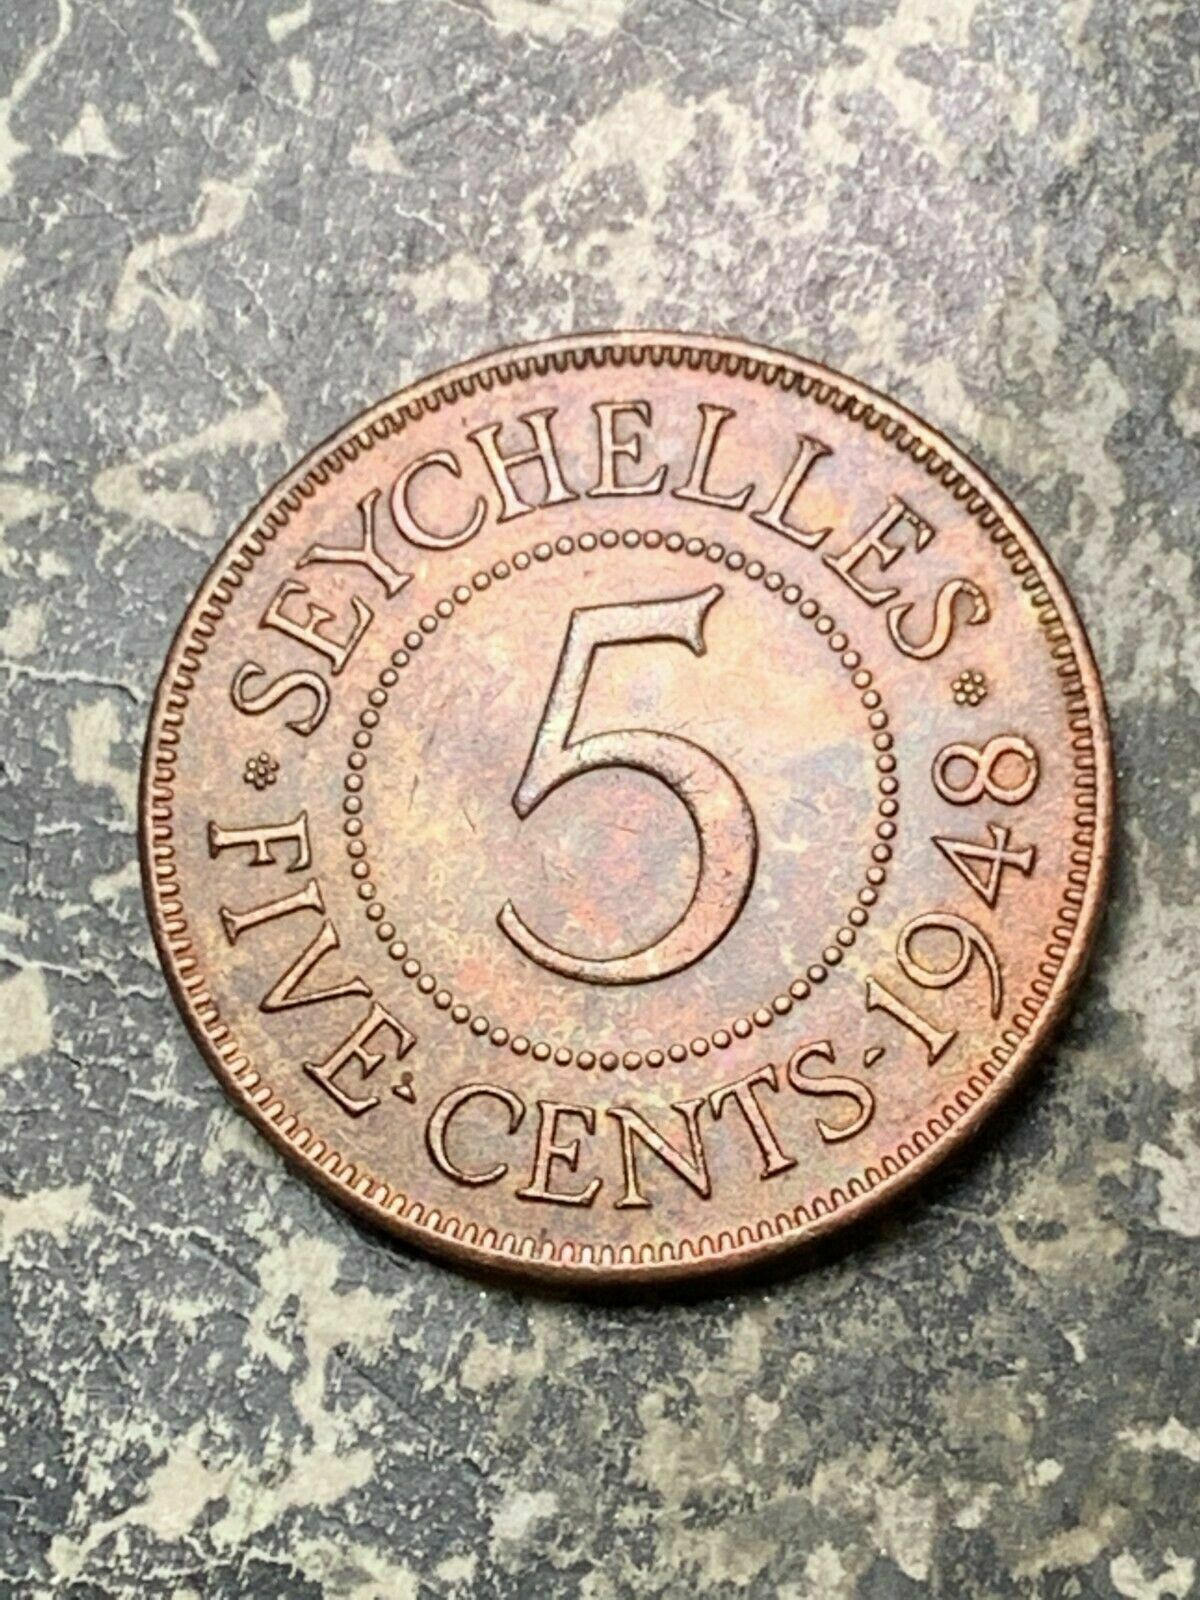 1948 Seychelles 5 Cent Lot#z6667 High Grade! Beautiful!